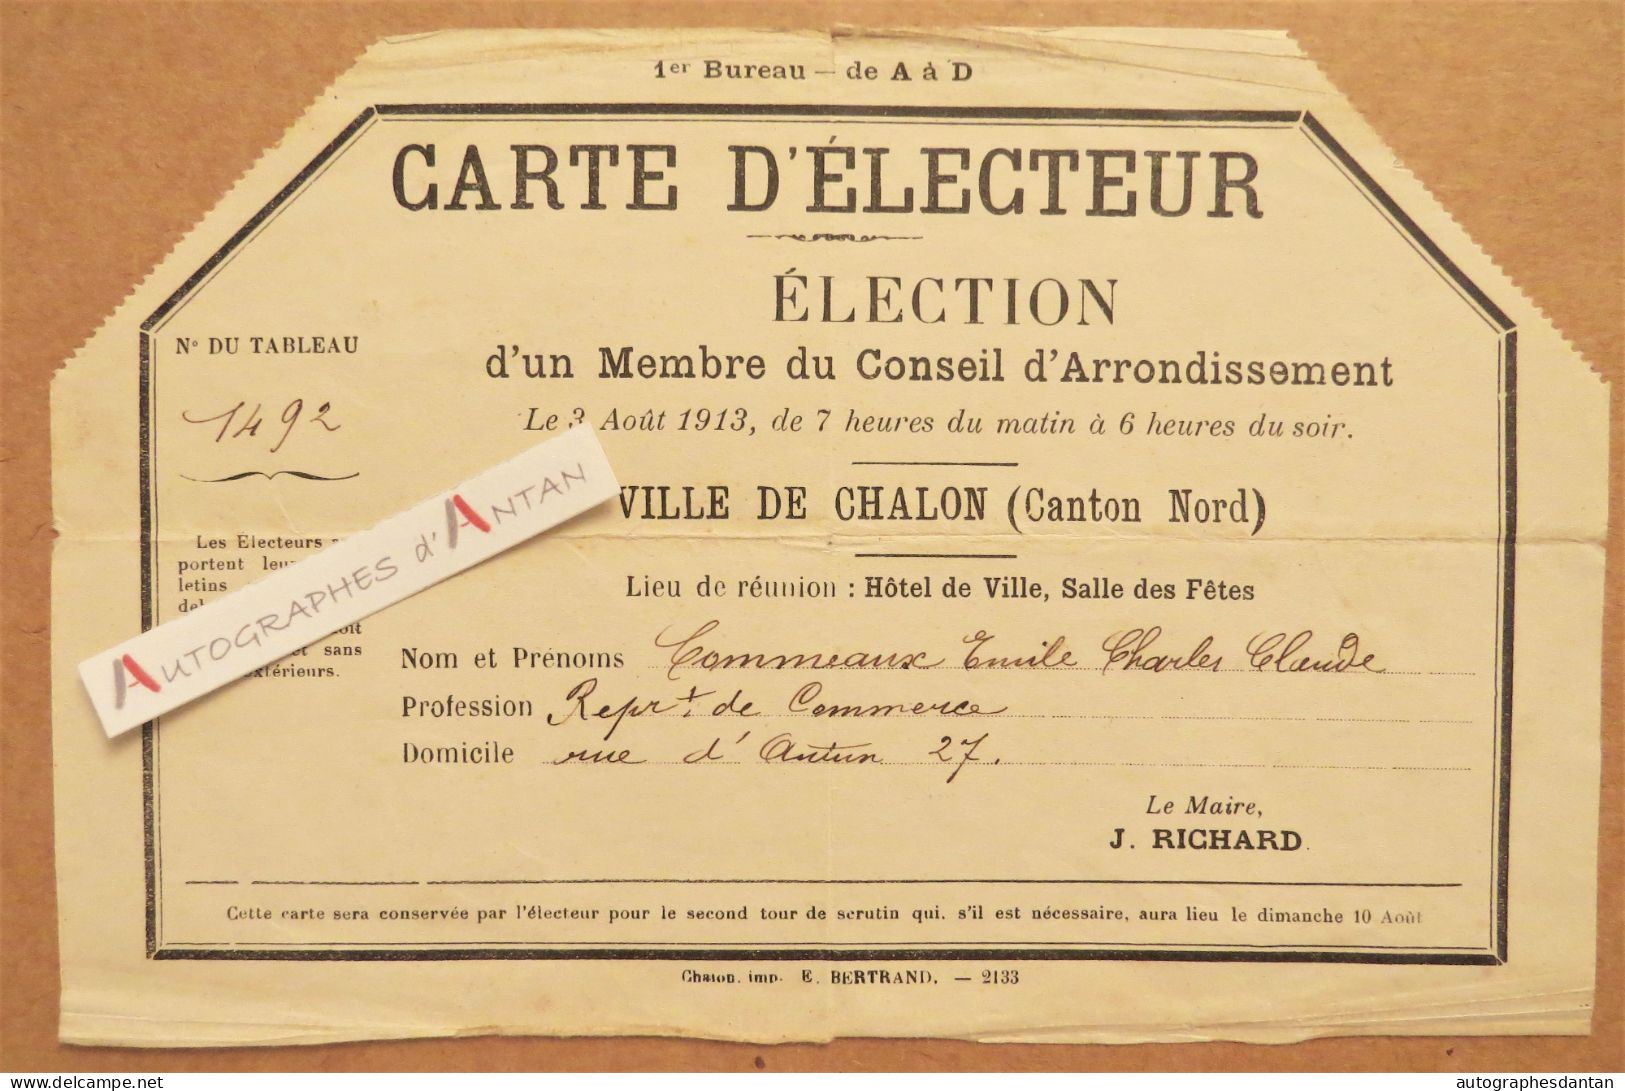 ● Carte D'électeur 1913 M. Commeaux - Chalon Sur Saône Saône Et Loire - Représentant De Commerce - 27 Rue D'Autun - Membership Cards